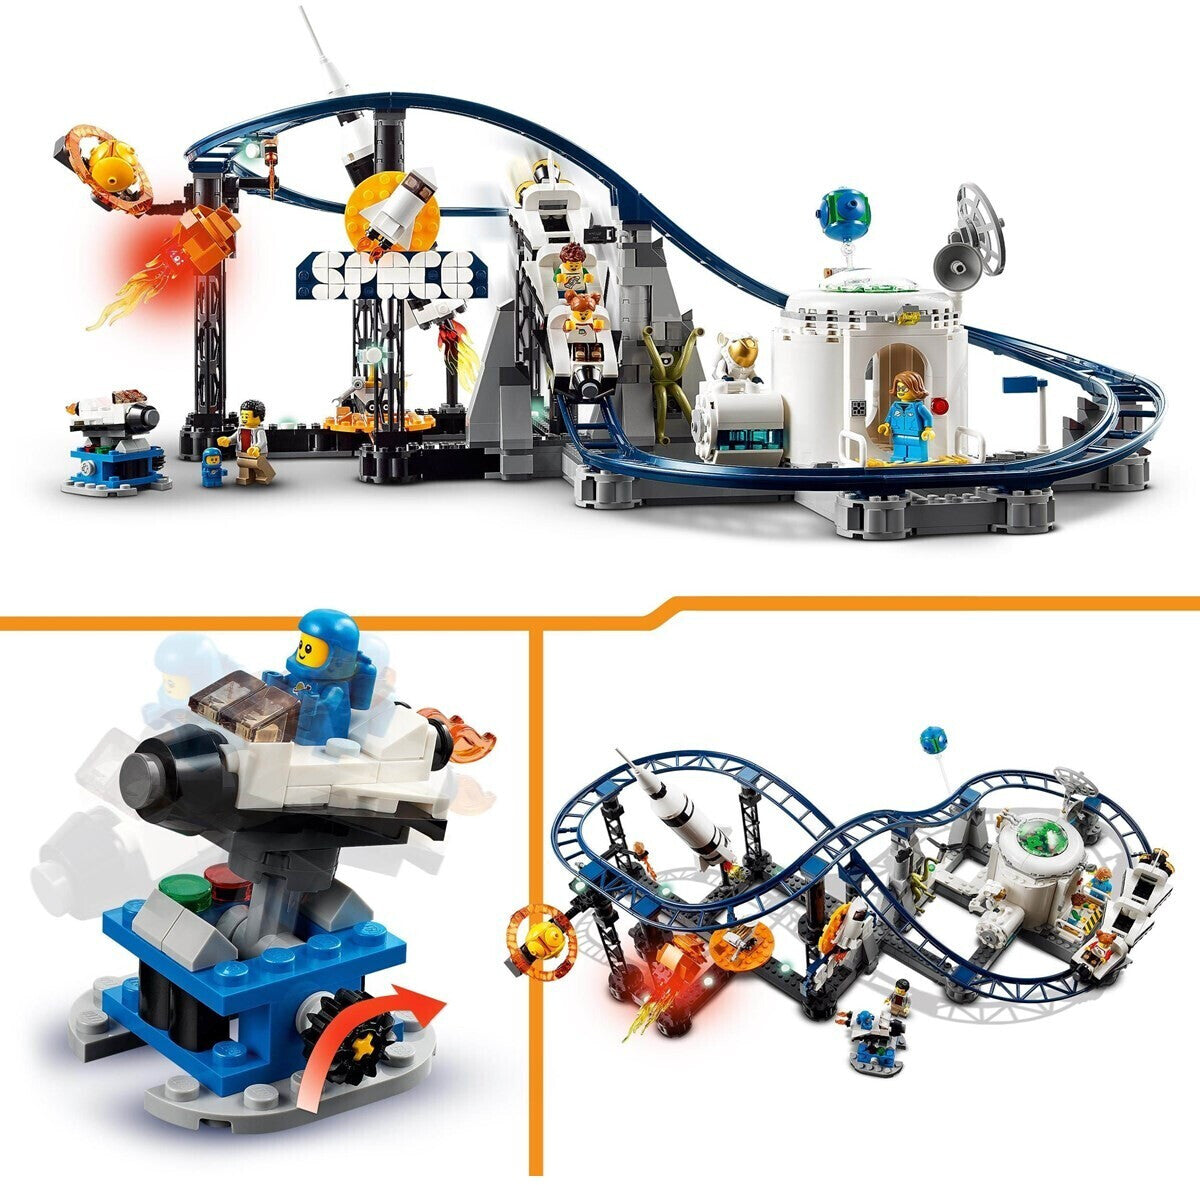 LEGO 31142 Creator 3 in 1 Weltraum Achterbahn / Freifallturm / Karussell